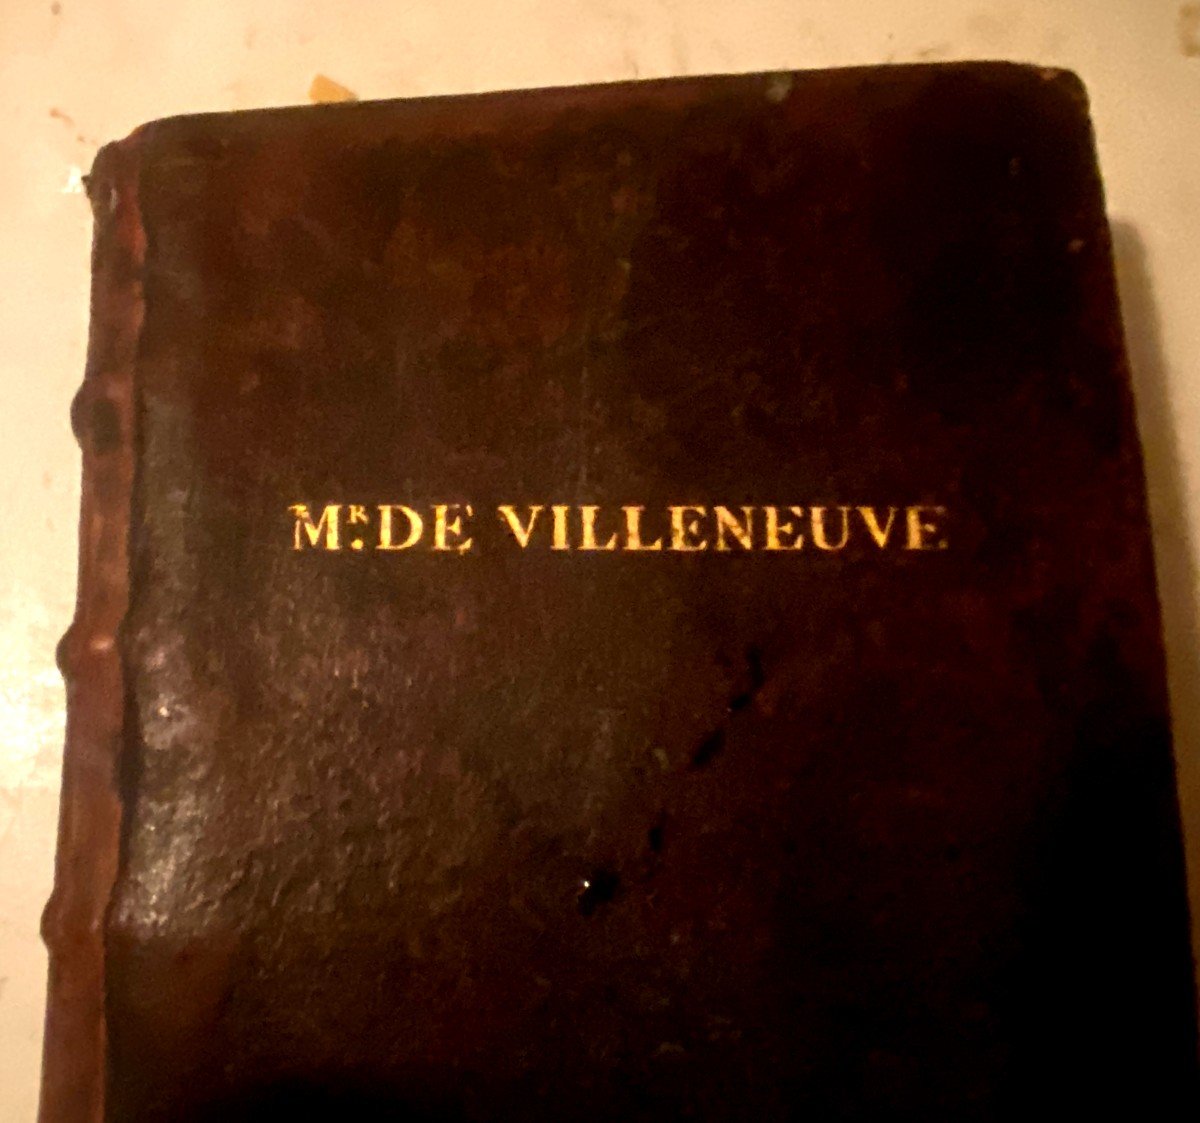 From 1672. In The Cipher Of Mr De Villeneuve: “spirit Of The Essays Of Michel Seigneur De Montaigne”